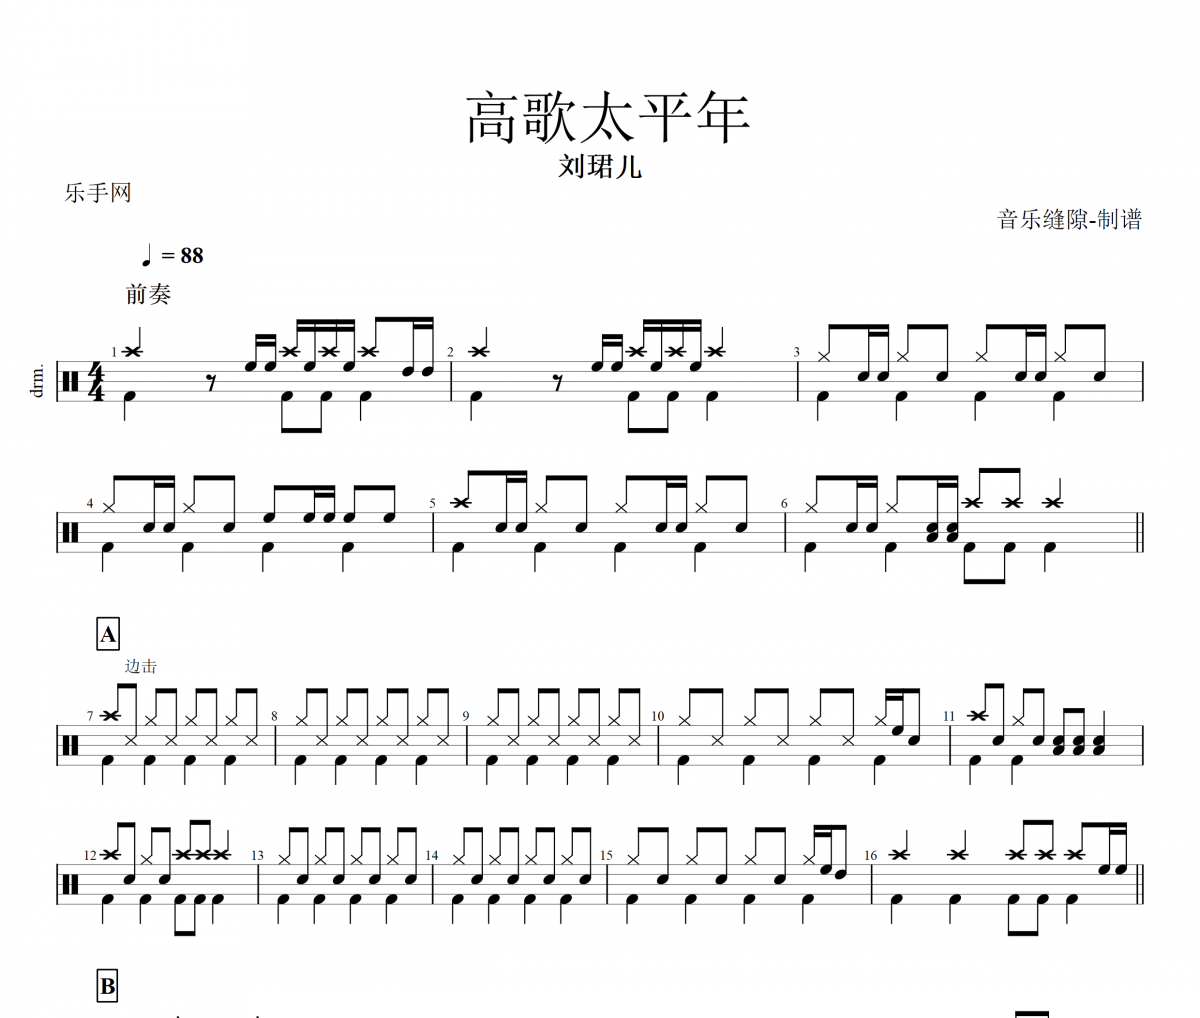 【春节】高歌太平年鼓谱 刘珺儿《高歌太平年》架子鼓|爵士鼓|鼓谱+动态视频